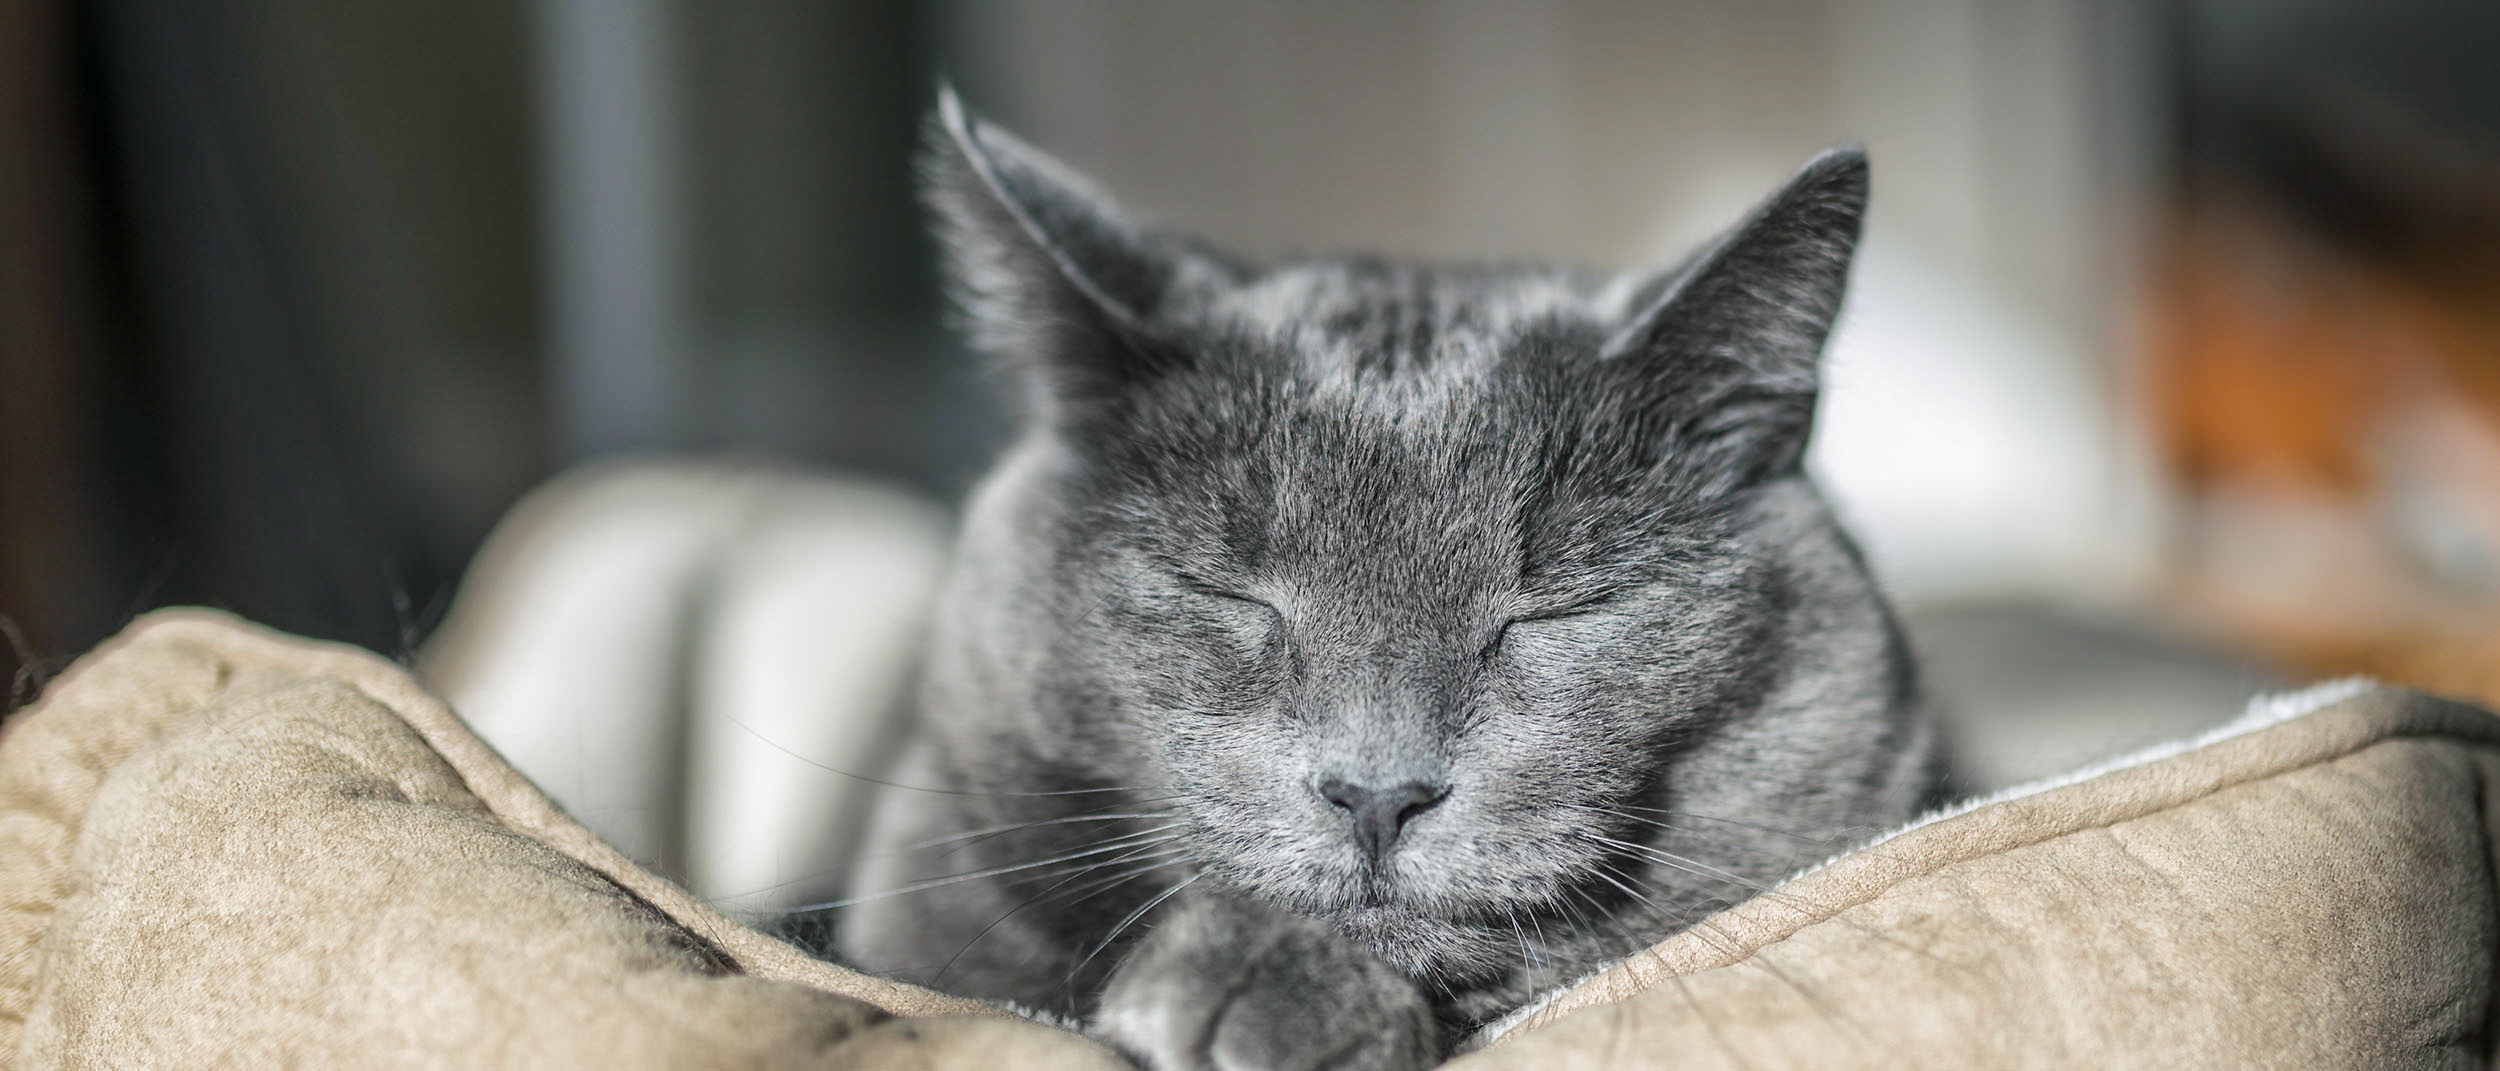 Gato de edad avanzada acostado durmiendo sobre un almohadón.